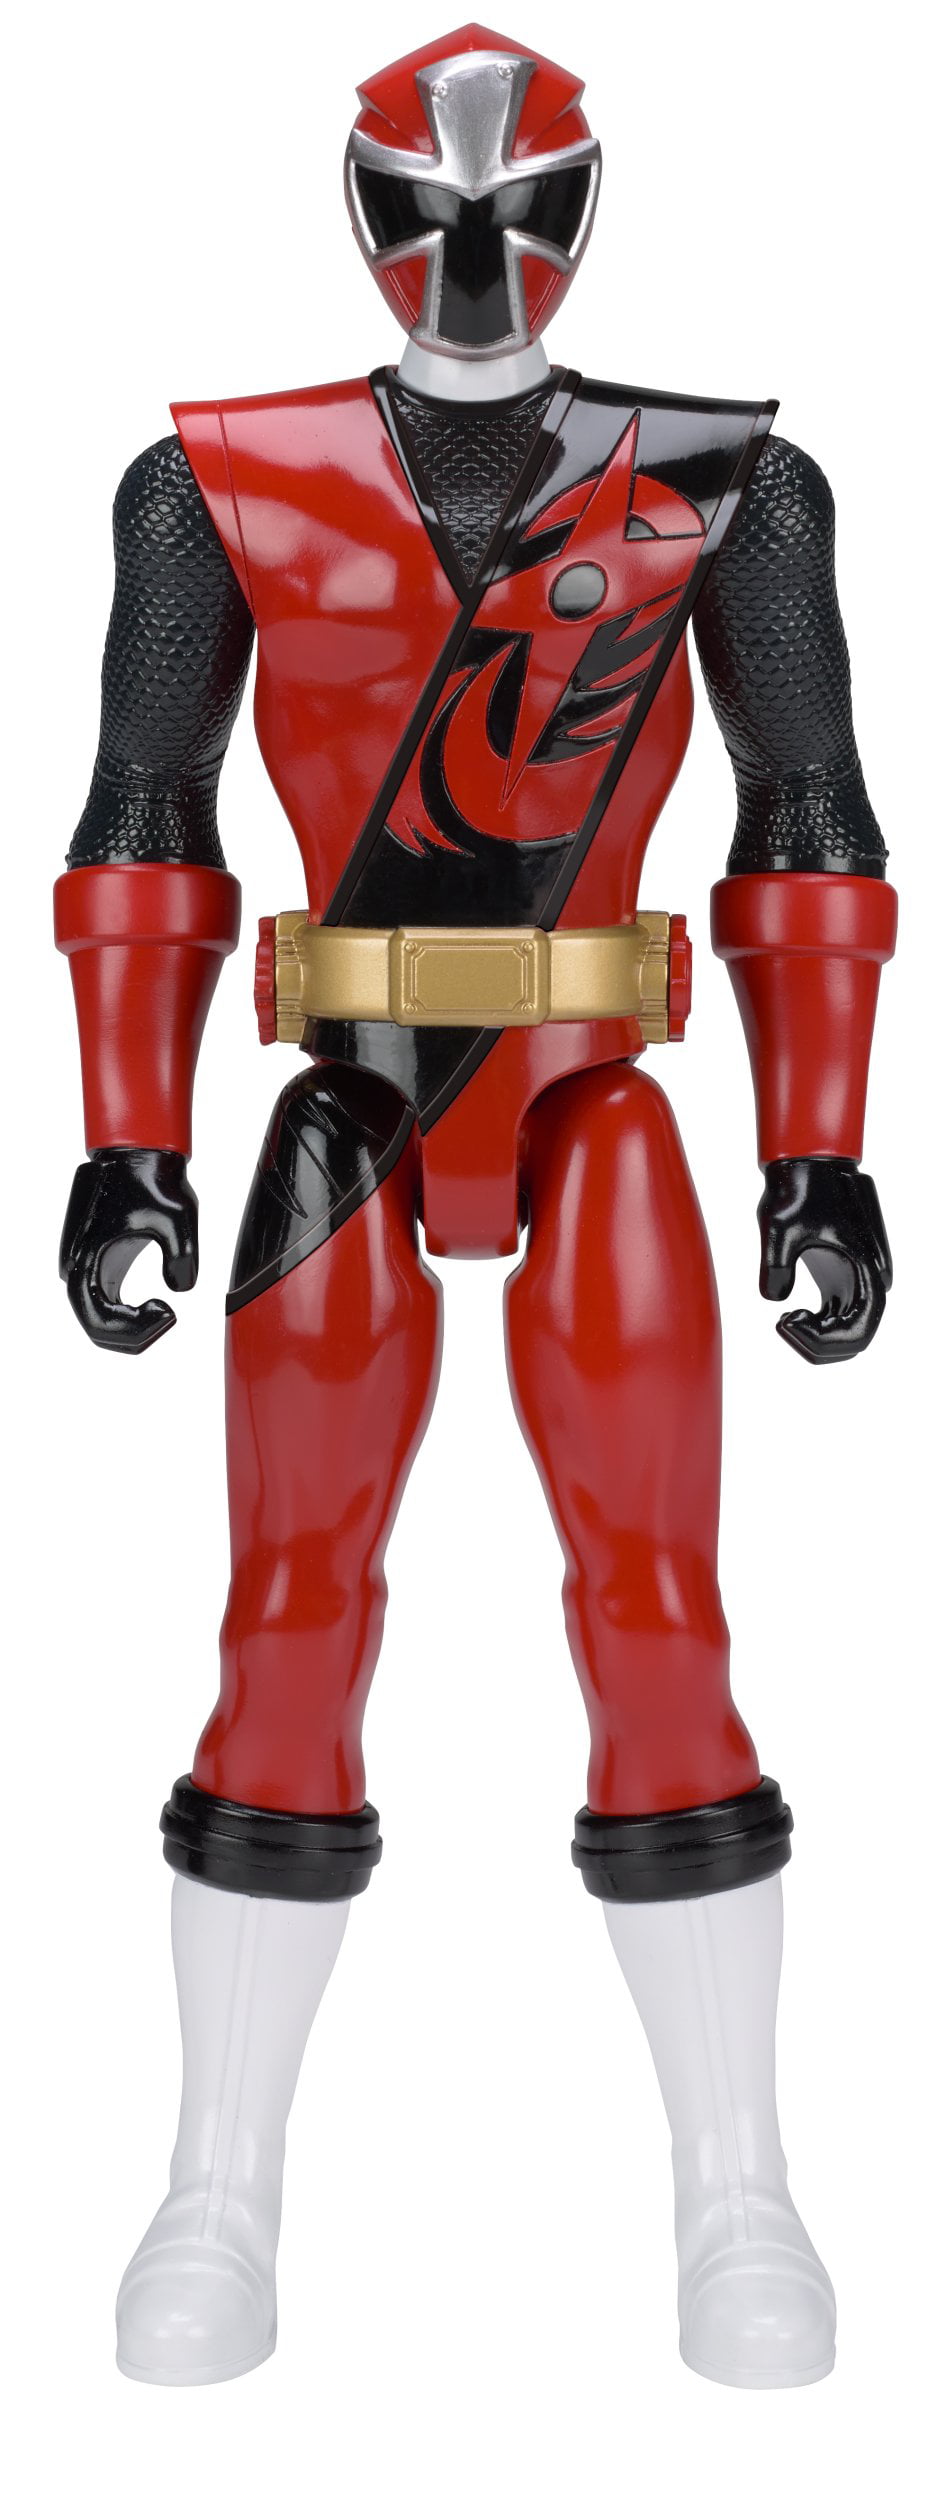 power rangers super ninja steel action figures